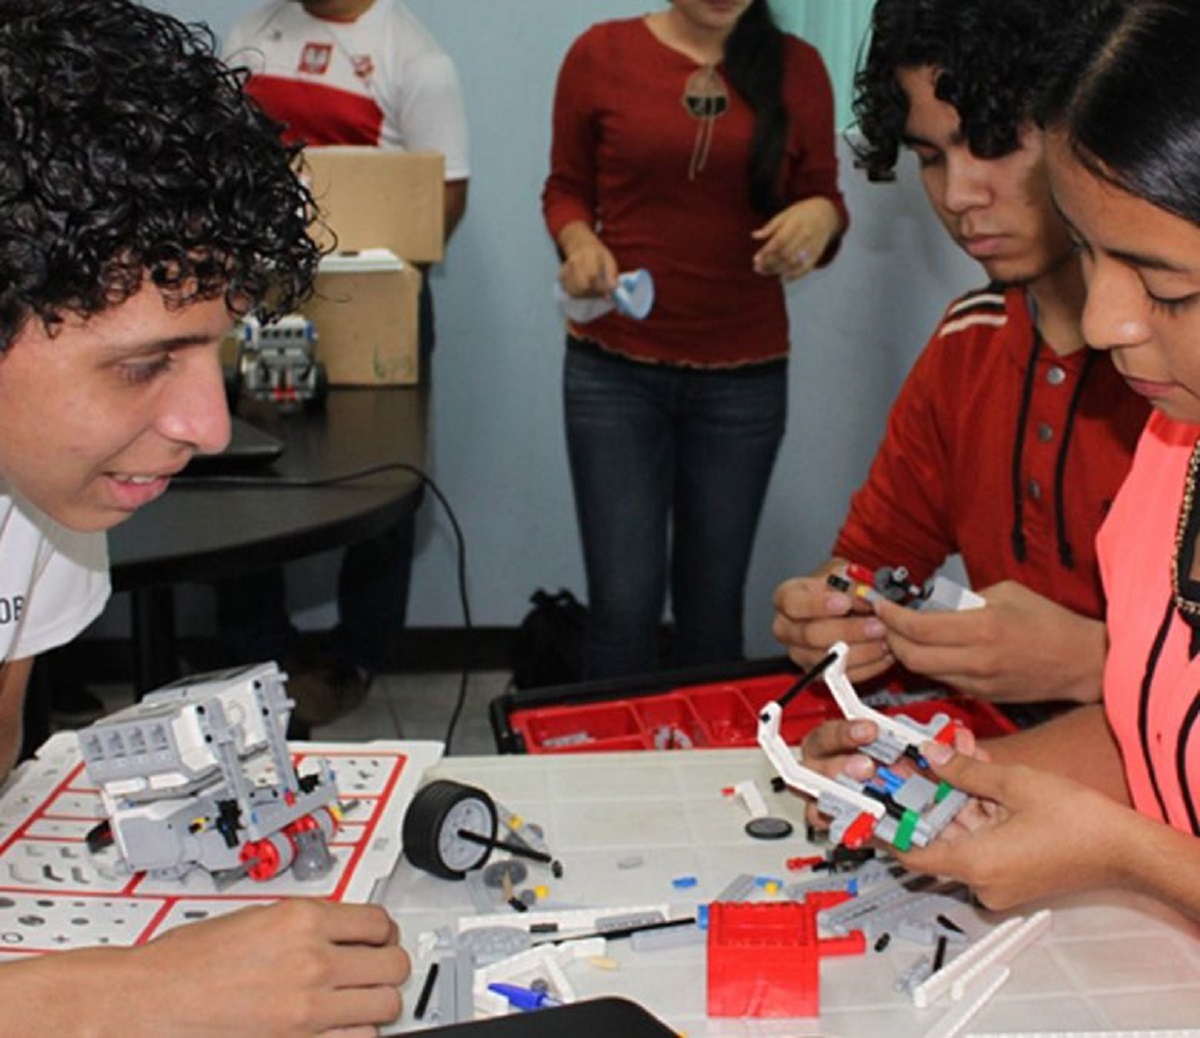 Universidad nacional de ingenieria capacitara en robotica a estudiantes del colegio guardabarranco